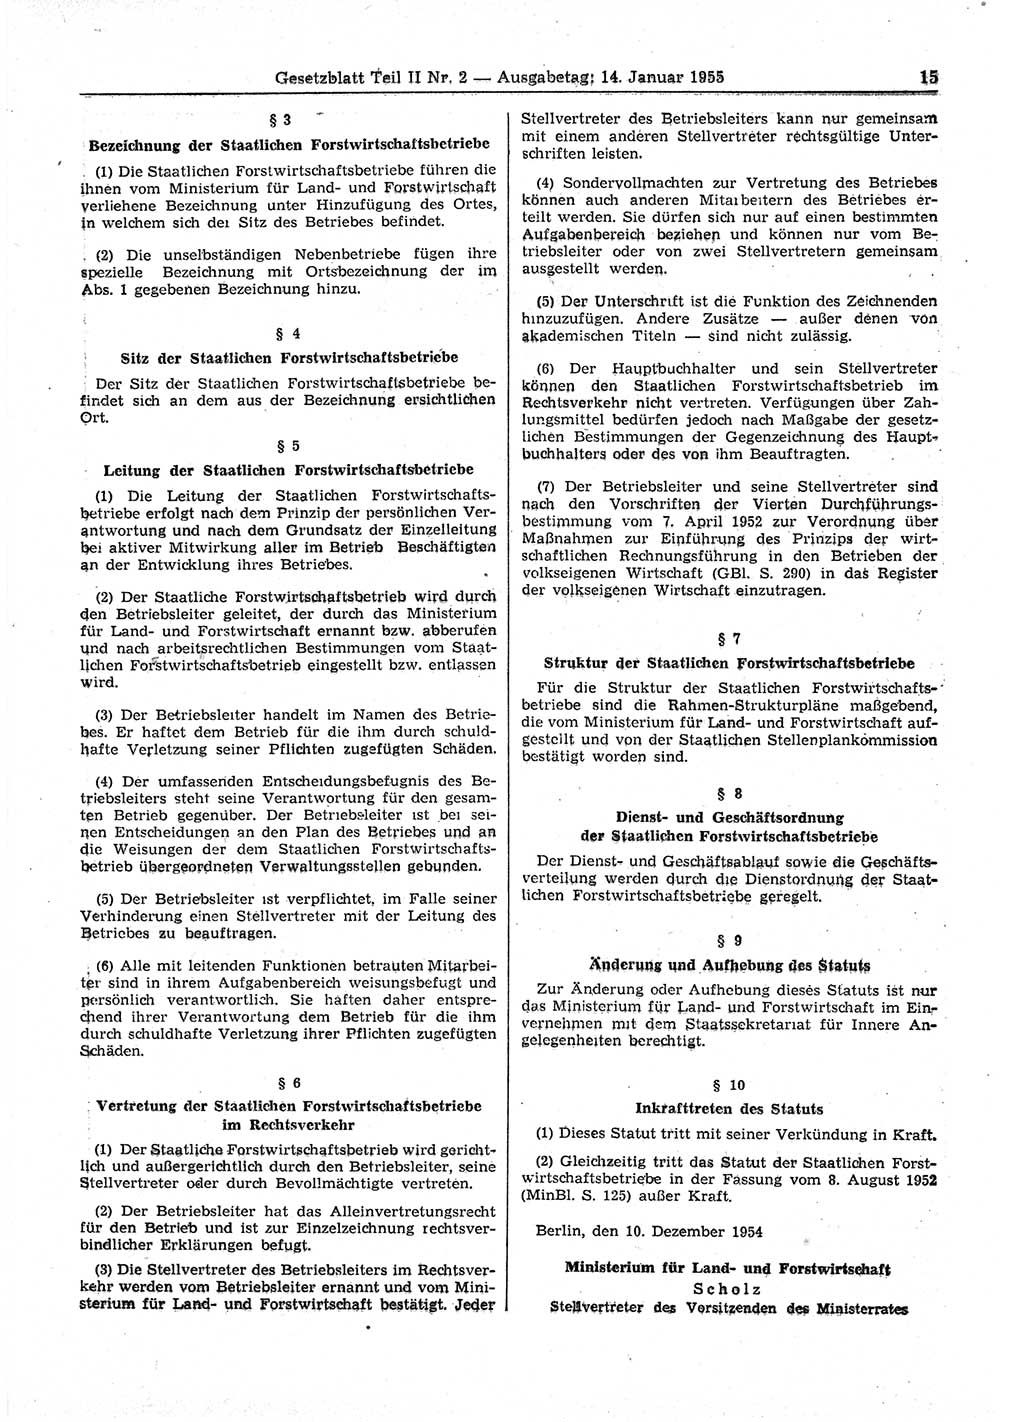 Gesetzblatt (GBl.) der Deutschen Demokratischen Republik (DDR) Teil ⅠⅠ 1955, Seite 15 (GBl. DDR ⅠⅠ 1955, S. 15)